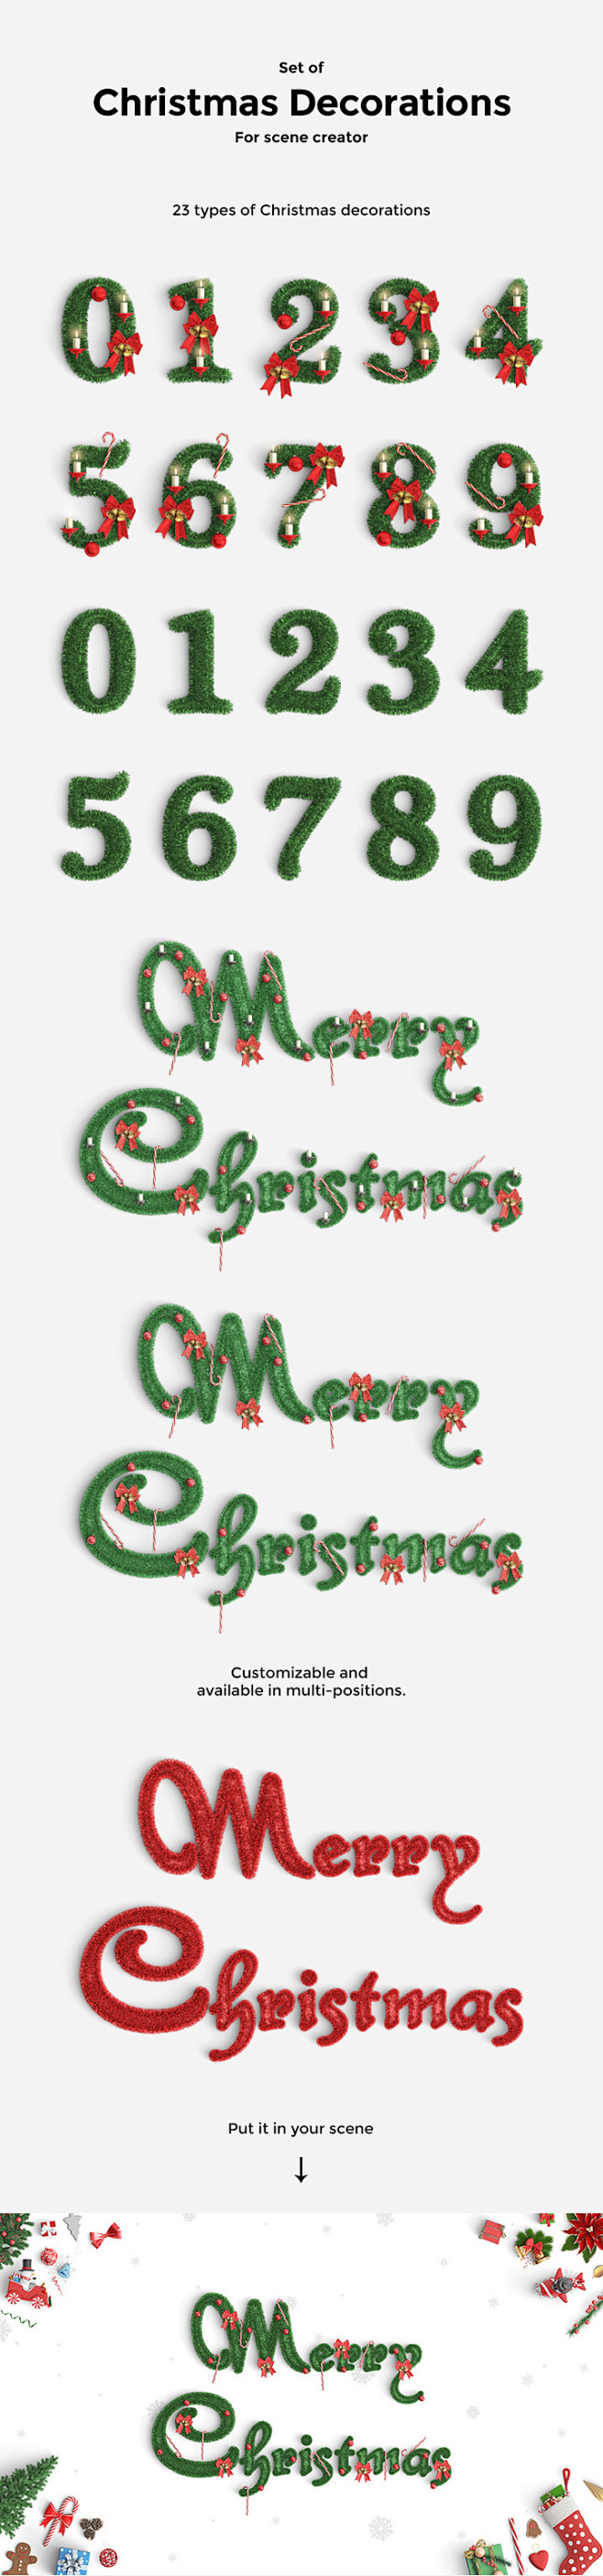 圣诞节必备的数字与字母风格字体下载[PS...